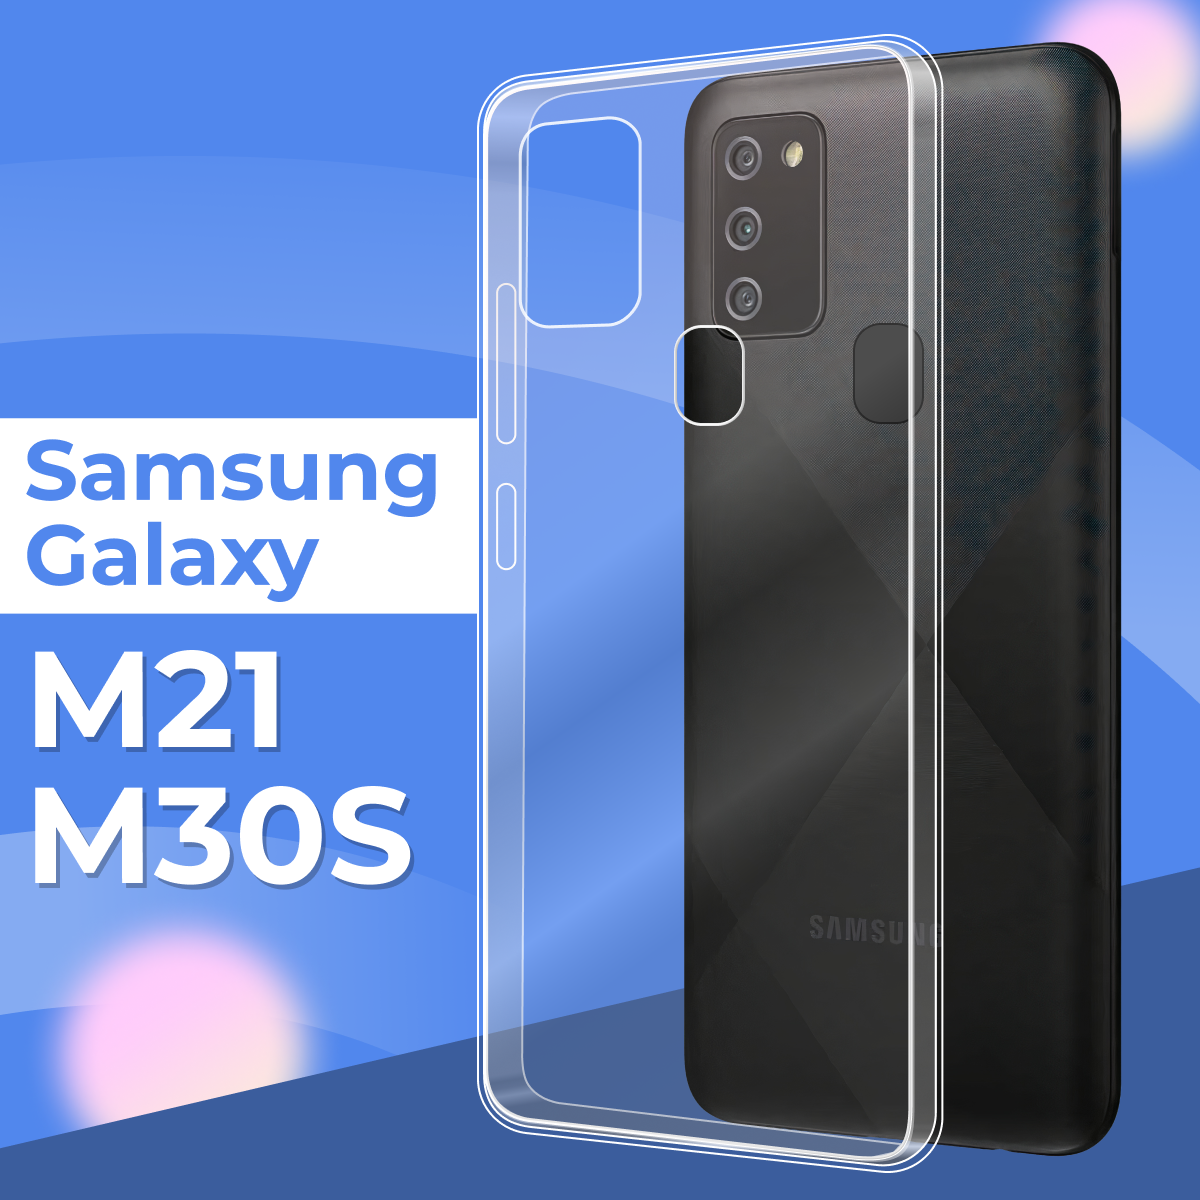 Ультратонкий силиконовый чехол для телефона Samsung Galaxy M21 и Galaxy M30S / Прозрачный защитный чехол для Самсунг Галакси М21 и Галакси М30 Эс